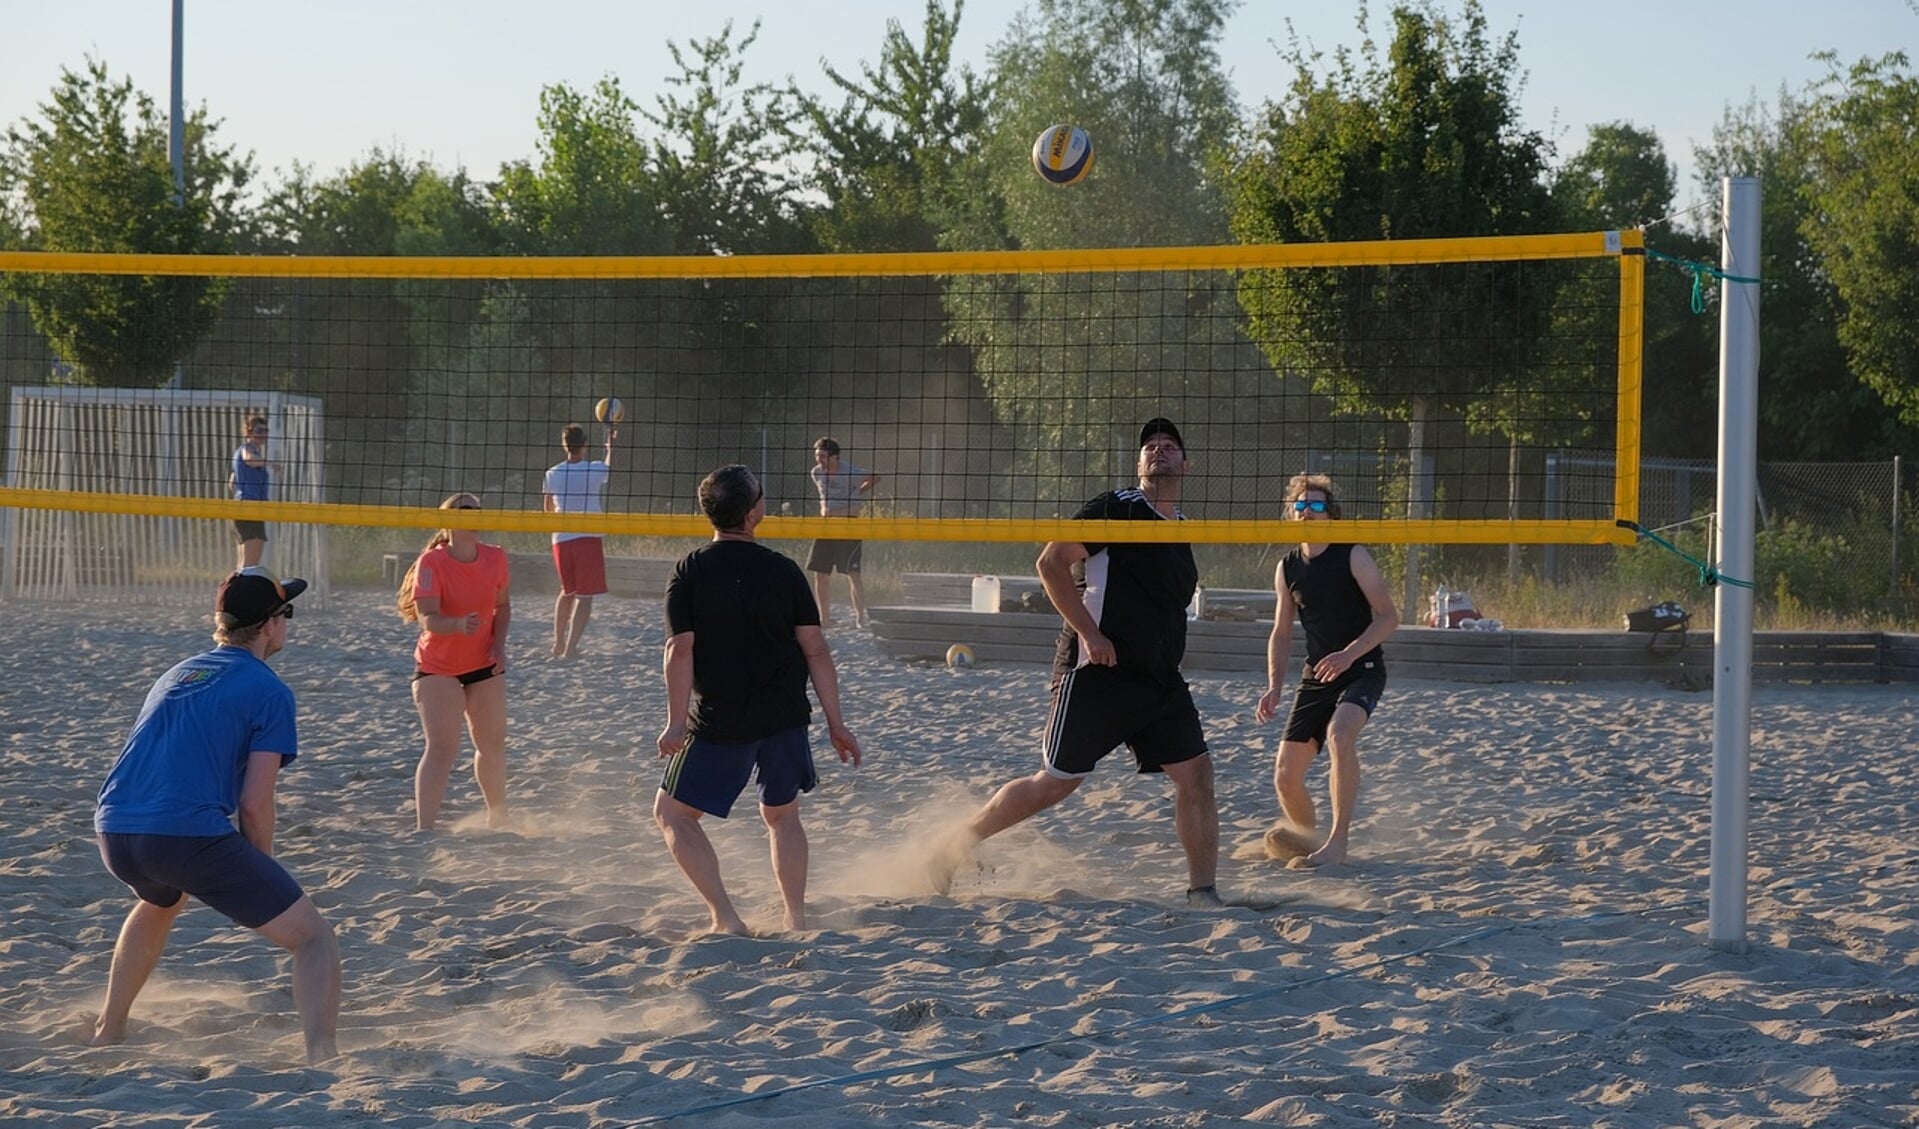 Beachvolleybal is populair. Volleybal Vereniging Ouderkerk wil graag drie beachvolleybalvelden aanleggen aan de Wethouder Koolhaasweg.